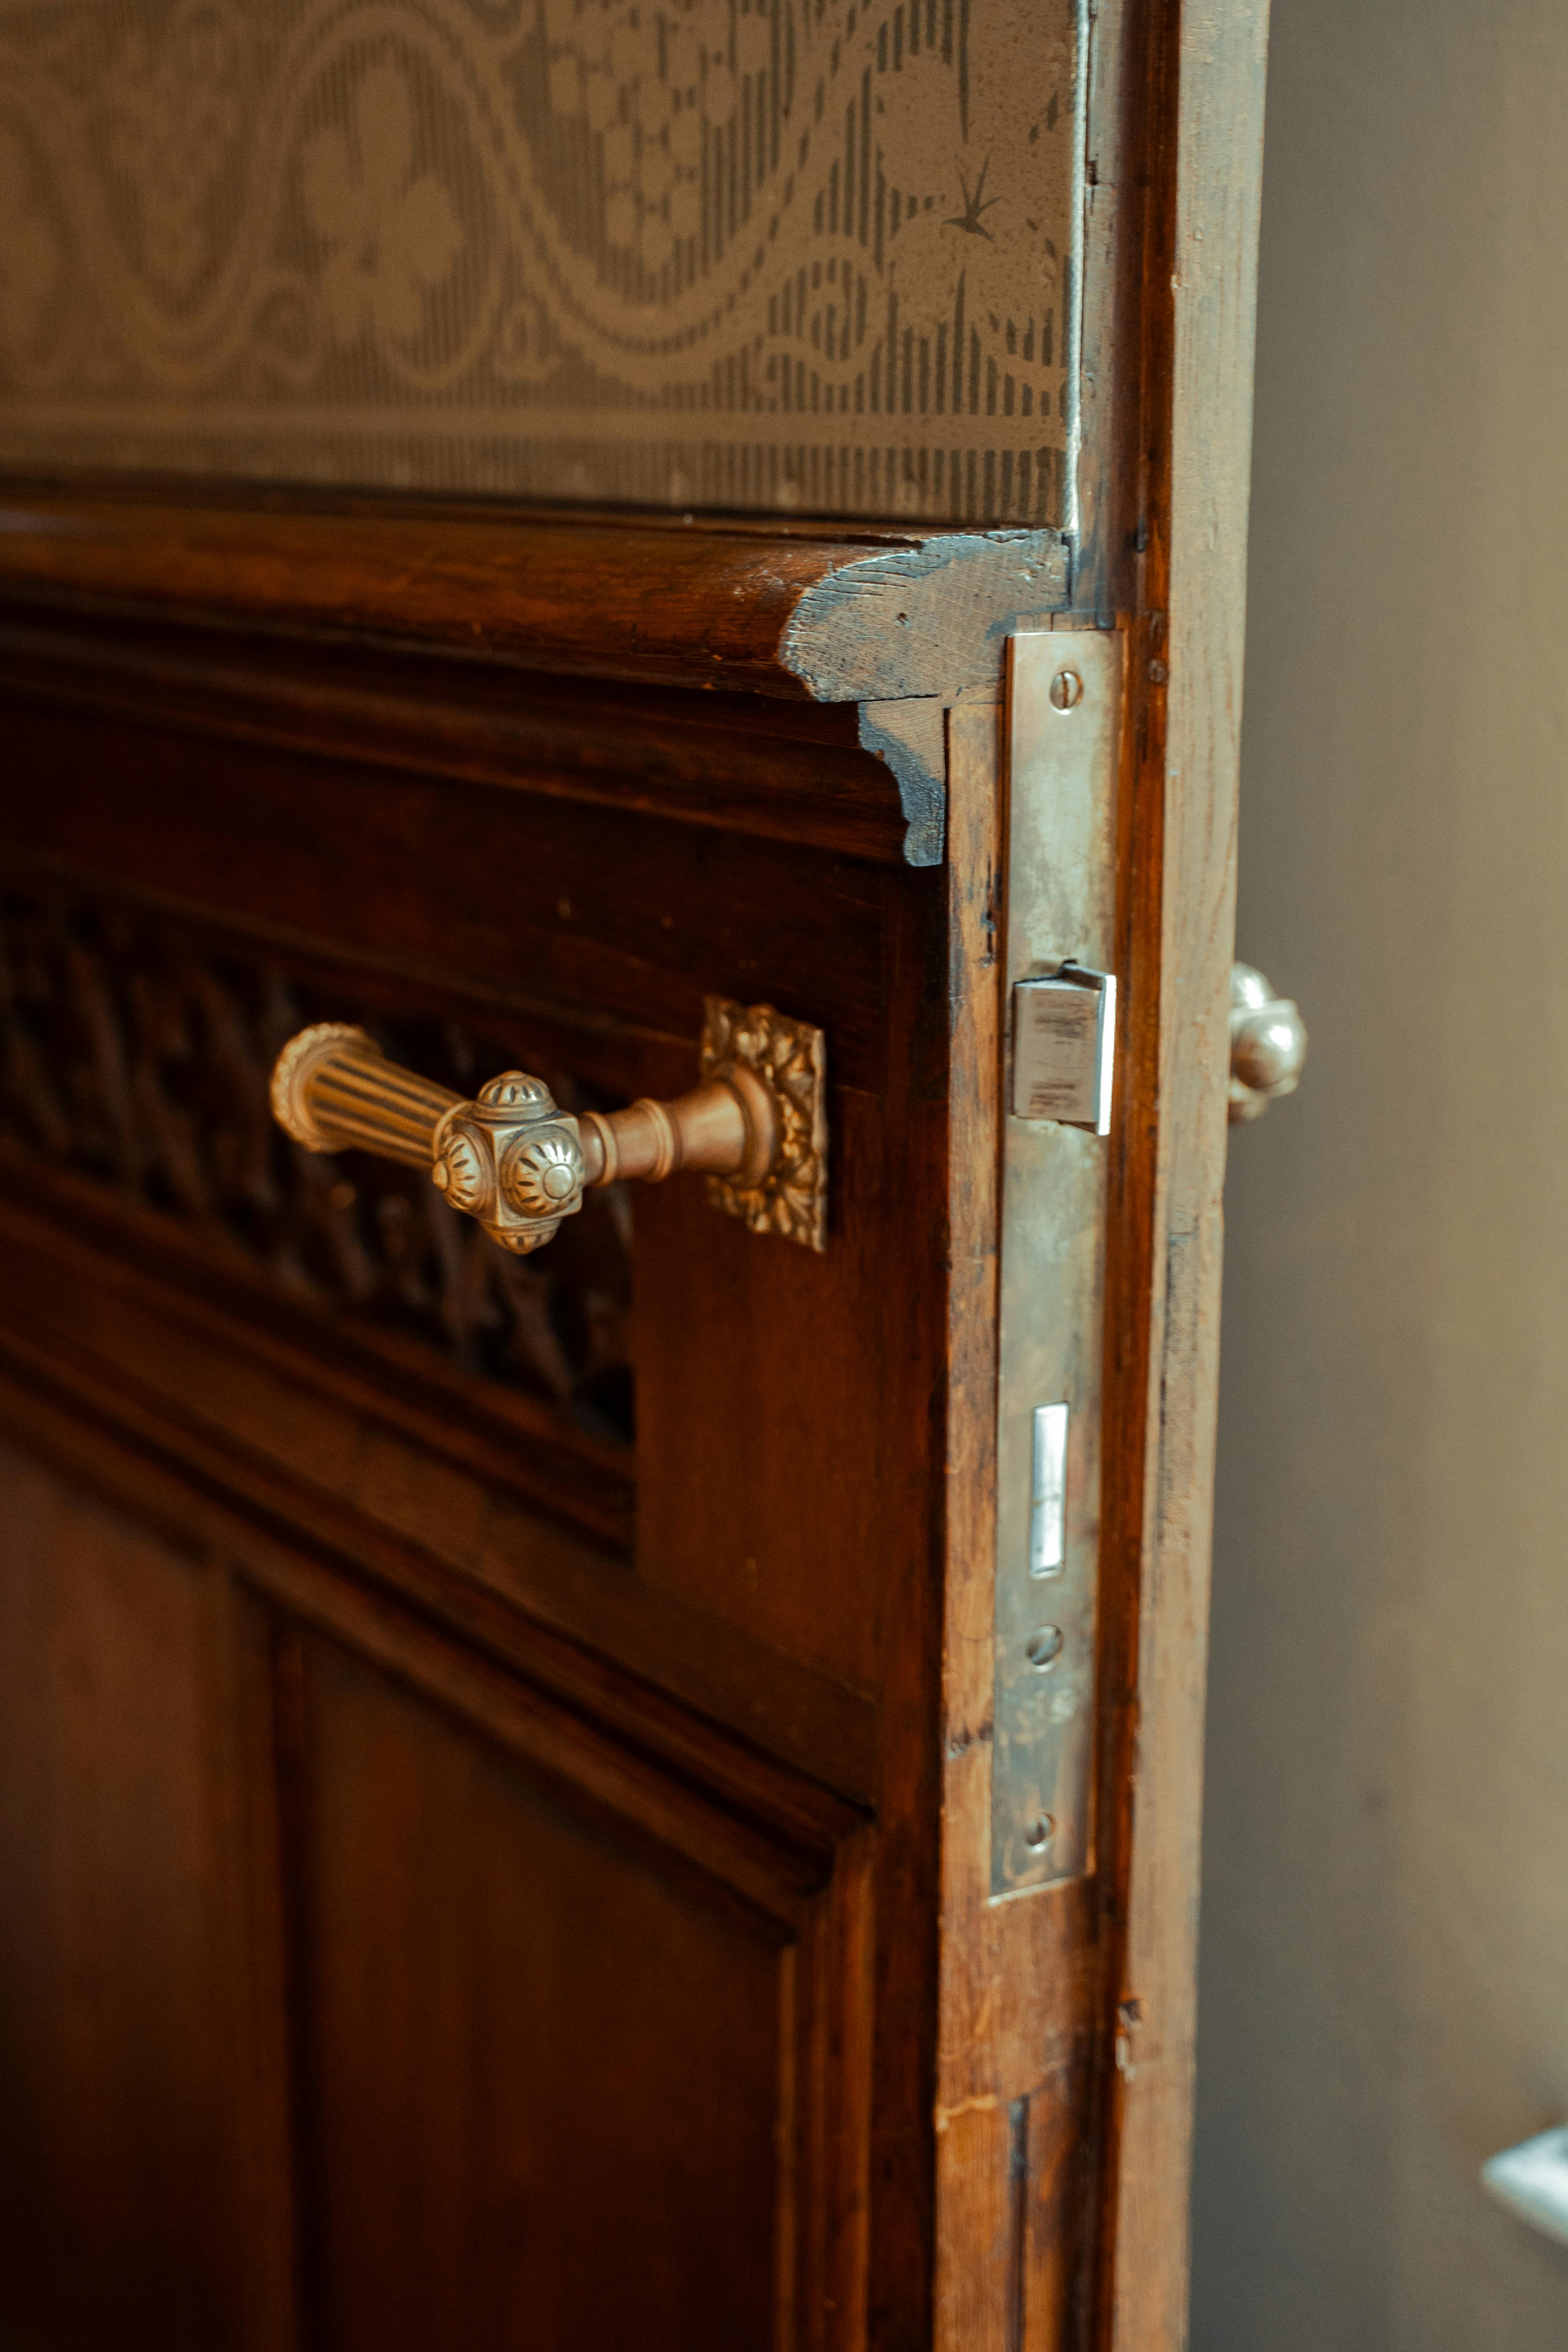 A brass door handle | Source: Pexels